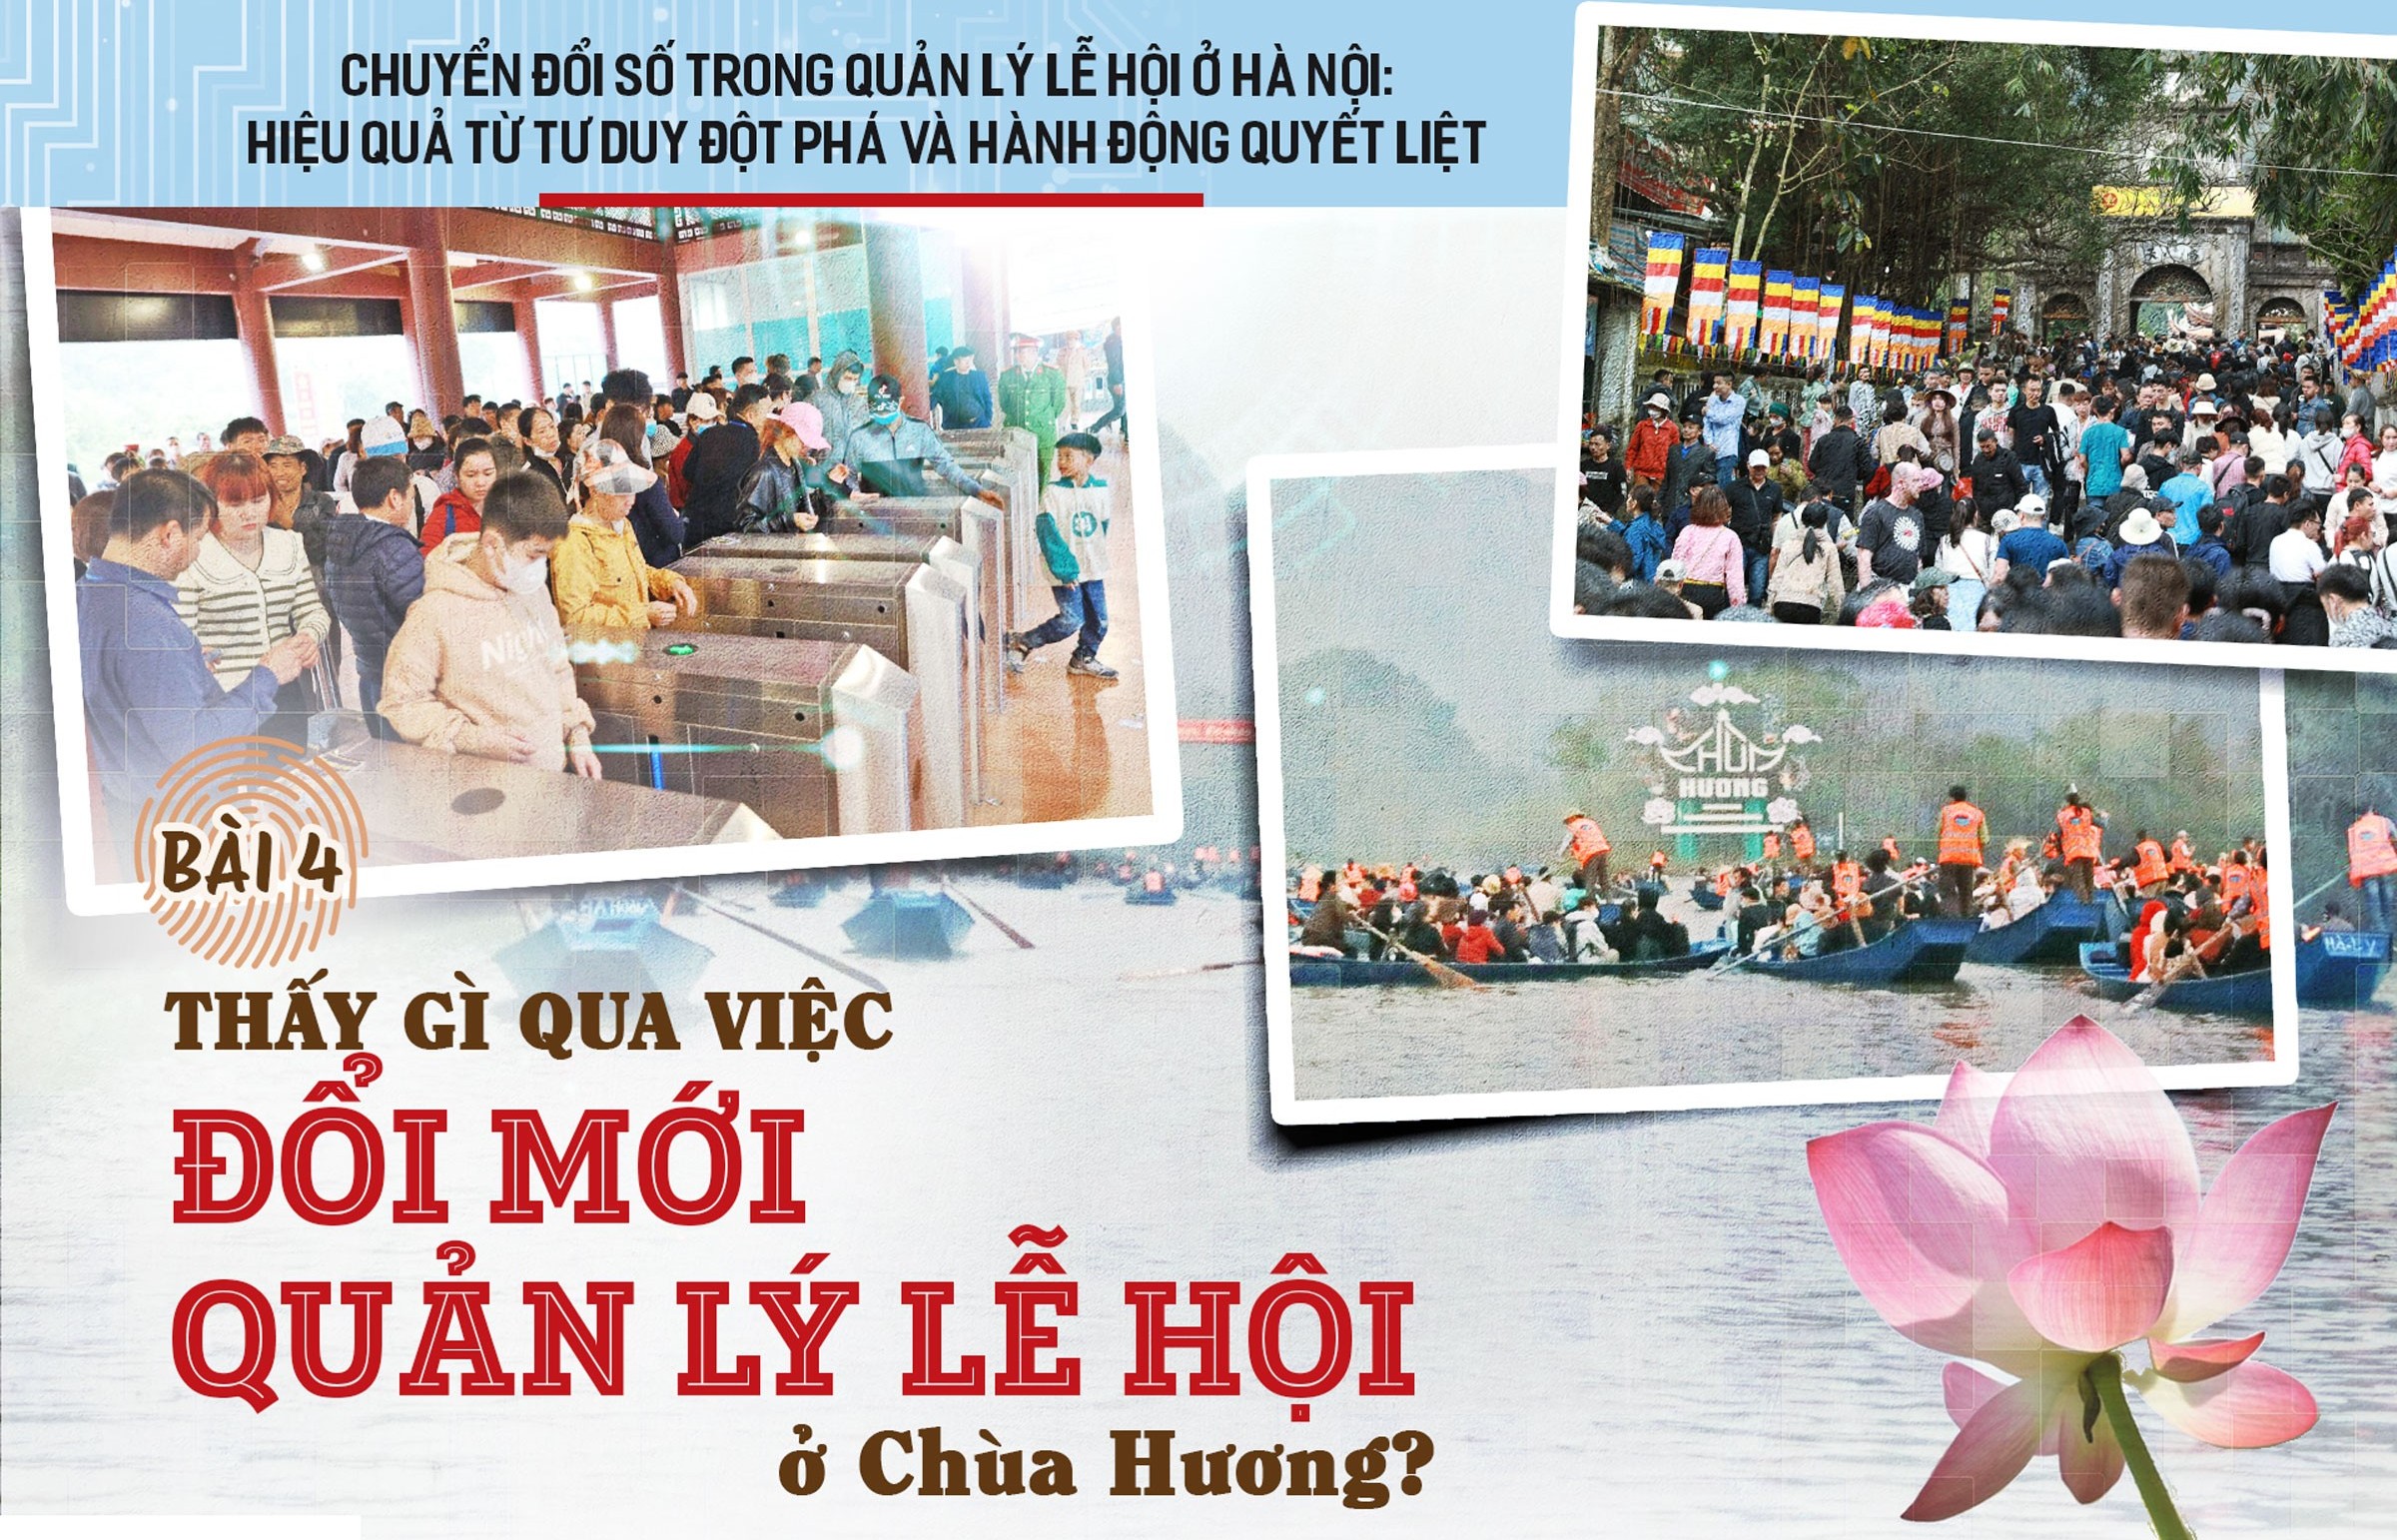 Bài 4: "Những điều trông thấy" từ đổi mới quản lý lễ hội chùa Hương?